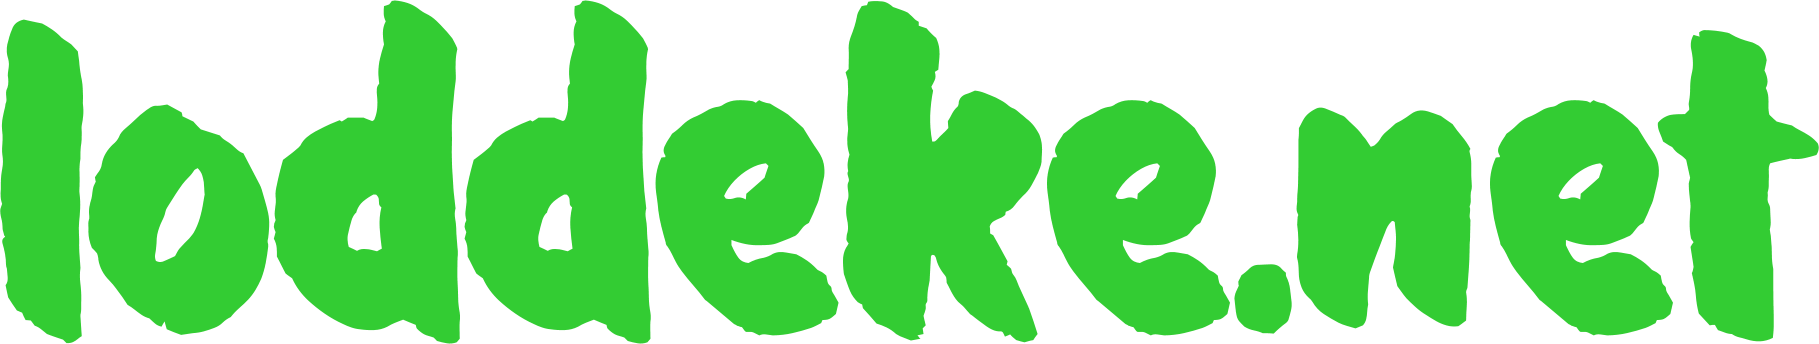 loddeke.net logo